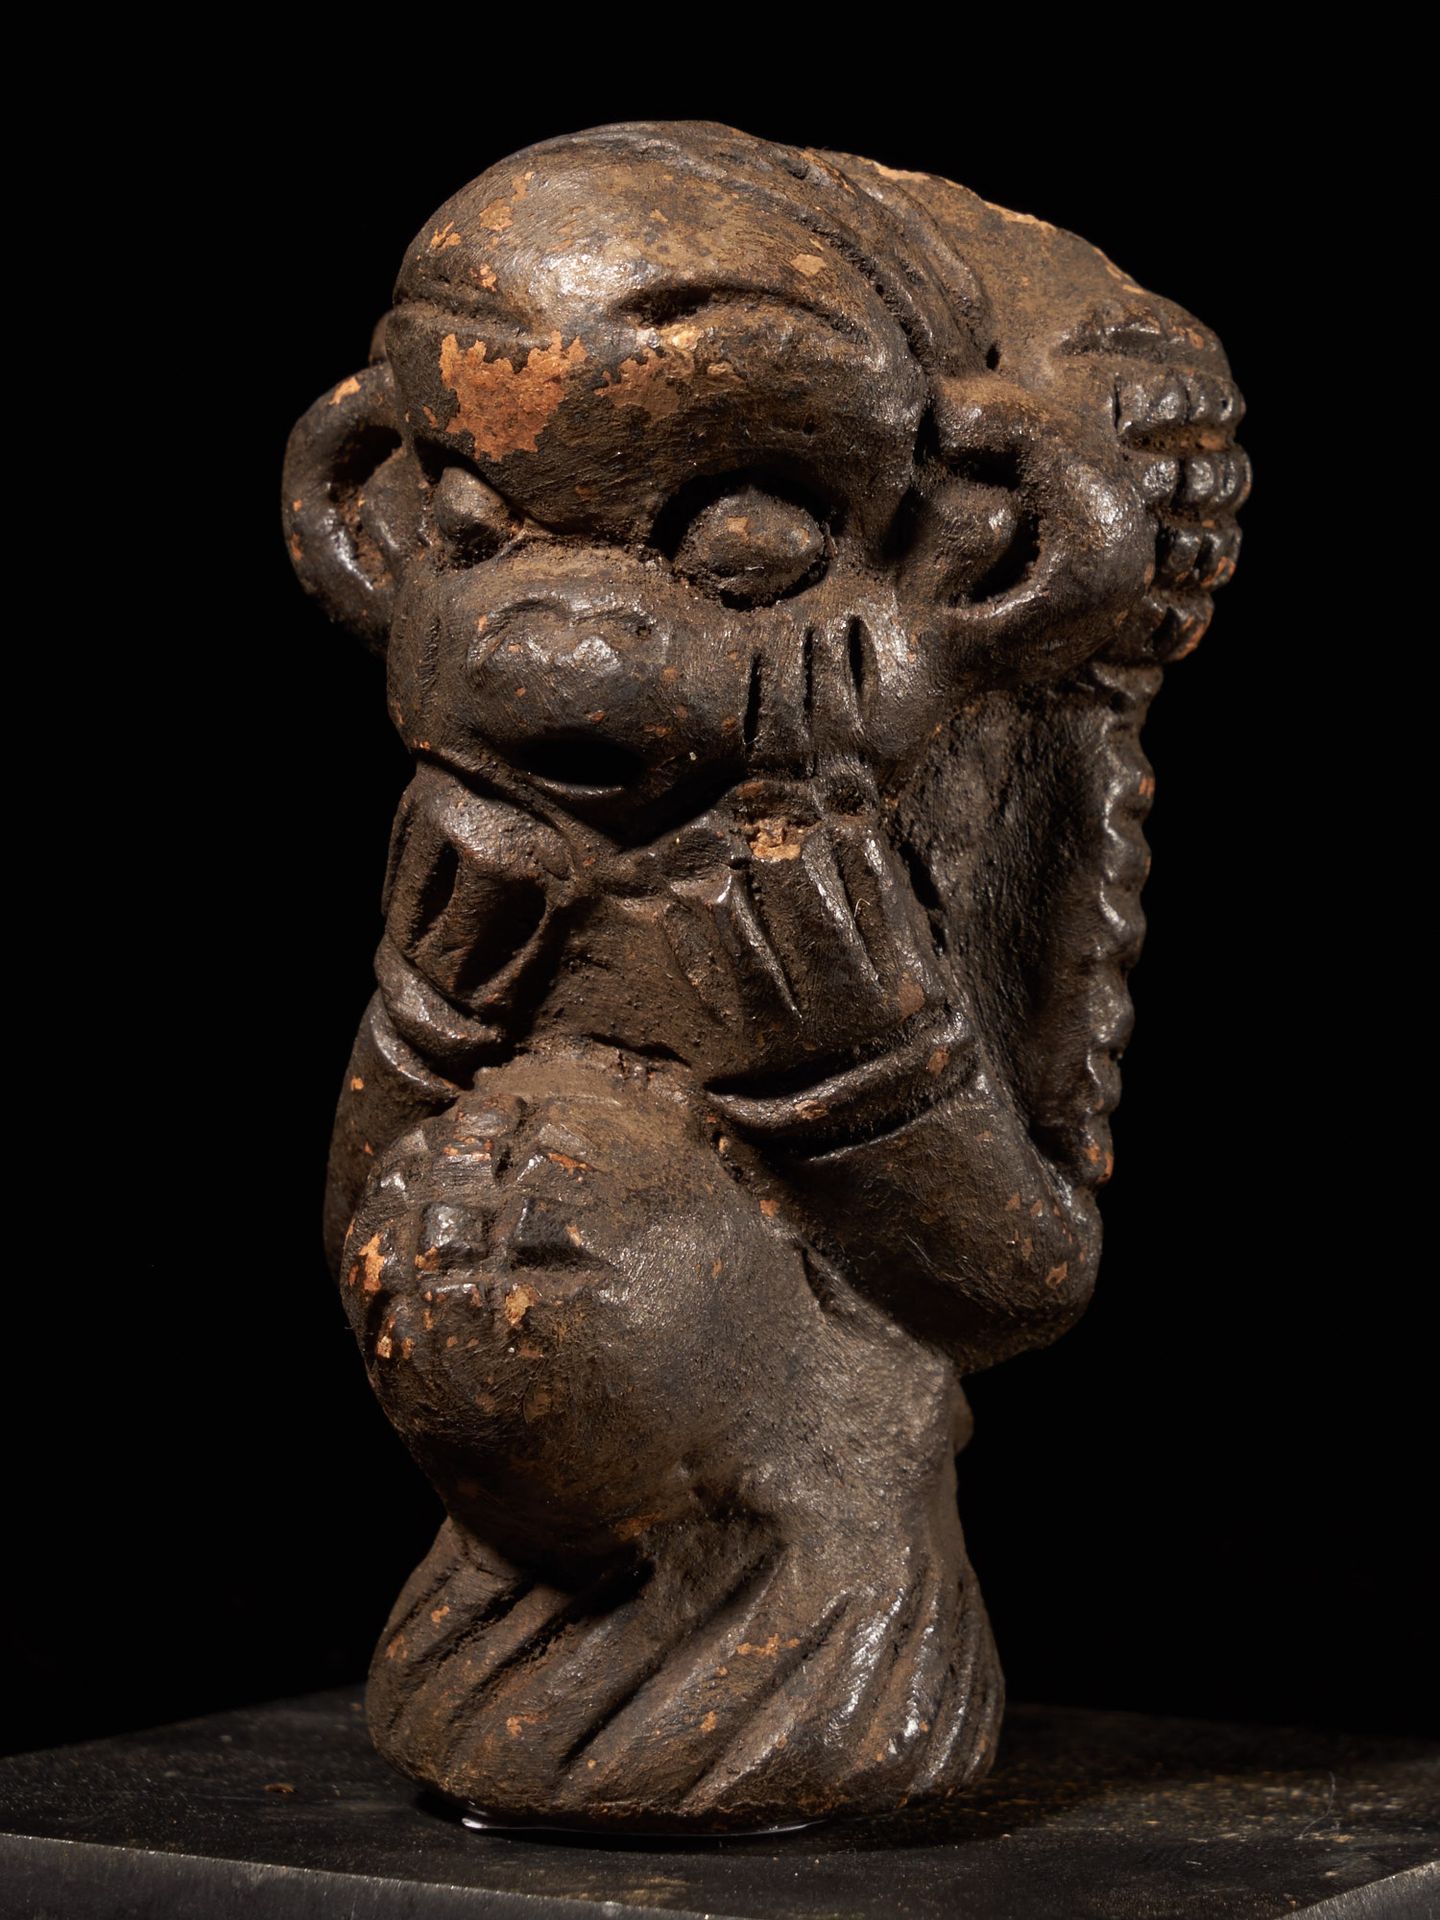 Peuple tikar Pipa de cerámica del pueblo Tikar, Camerún - 8,5*5*7,5 cm